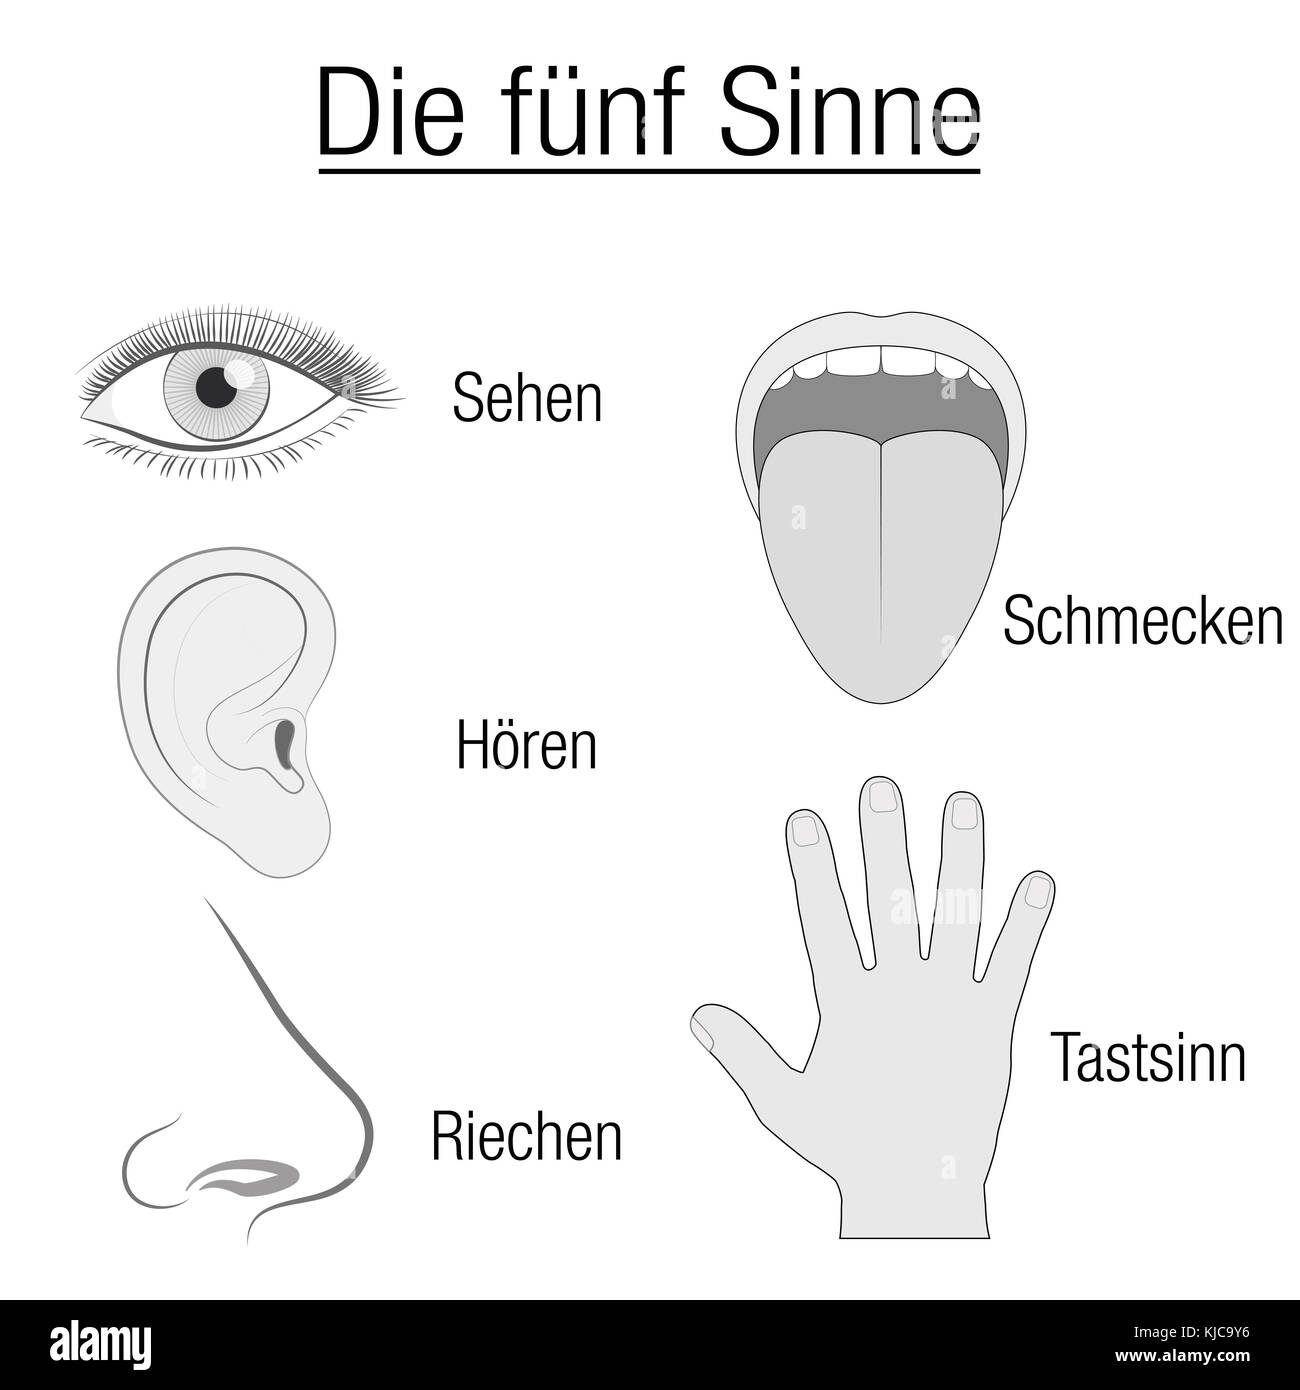 Cinq sens graphique - organes sensoriels des yeux, des oreilles, de la langue, du nez et de la main et désignation appropriée vue, ouïe, goût, odorat et le toucher, la langue allemande Banque D'Images